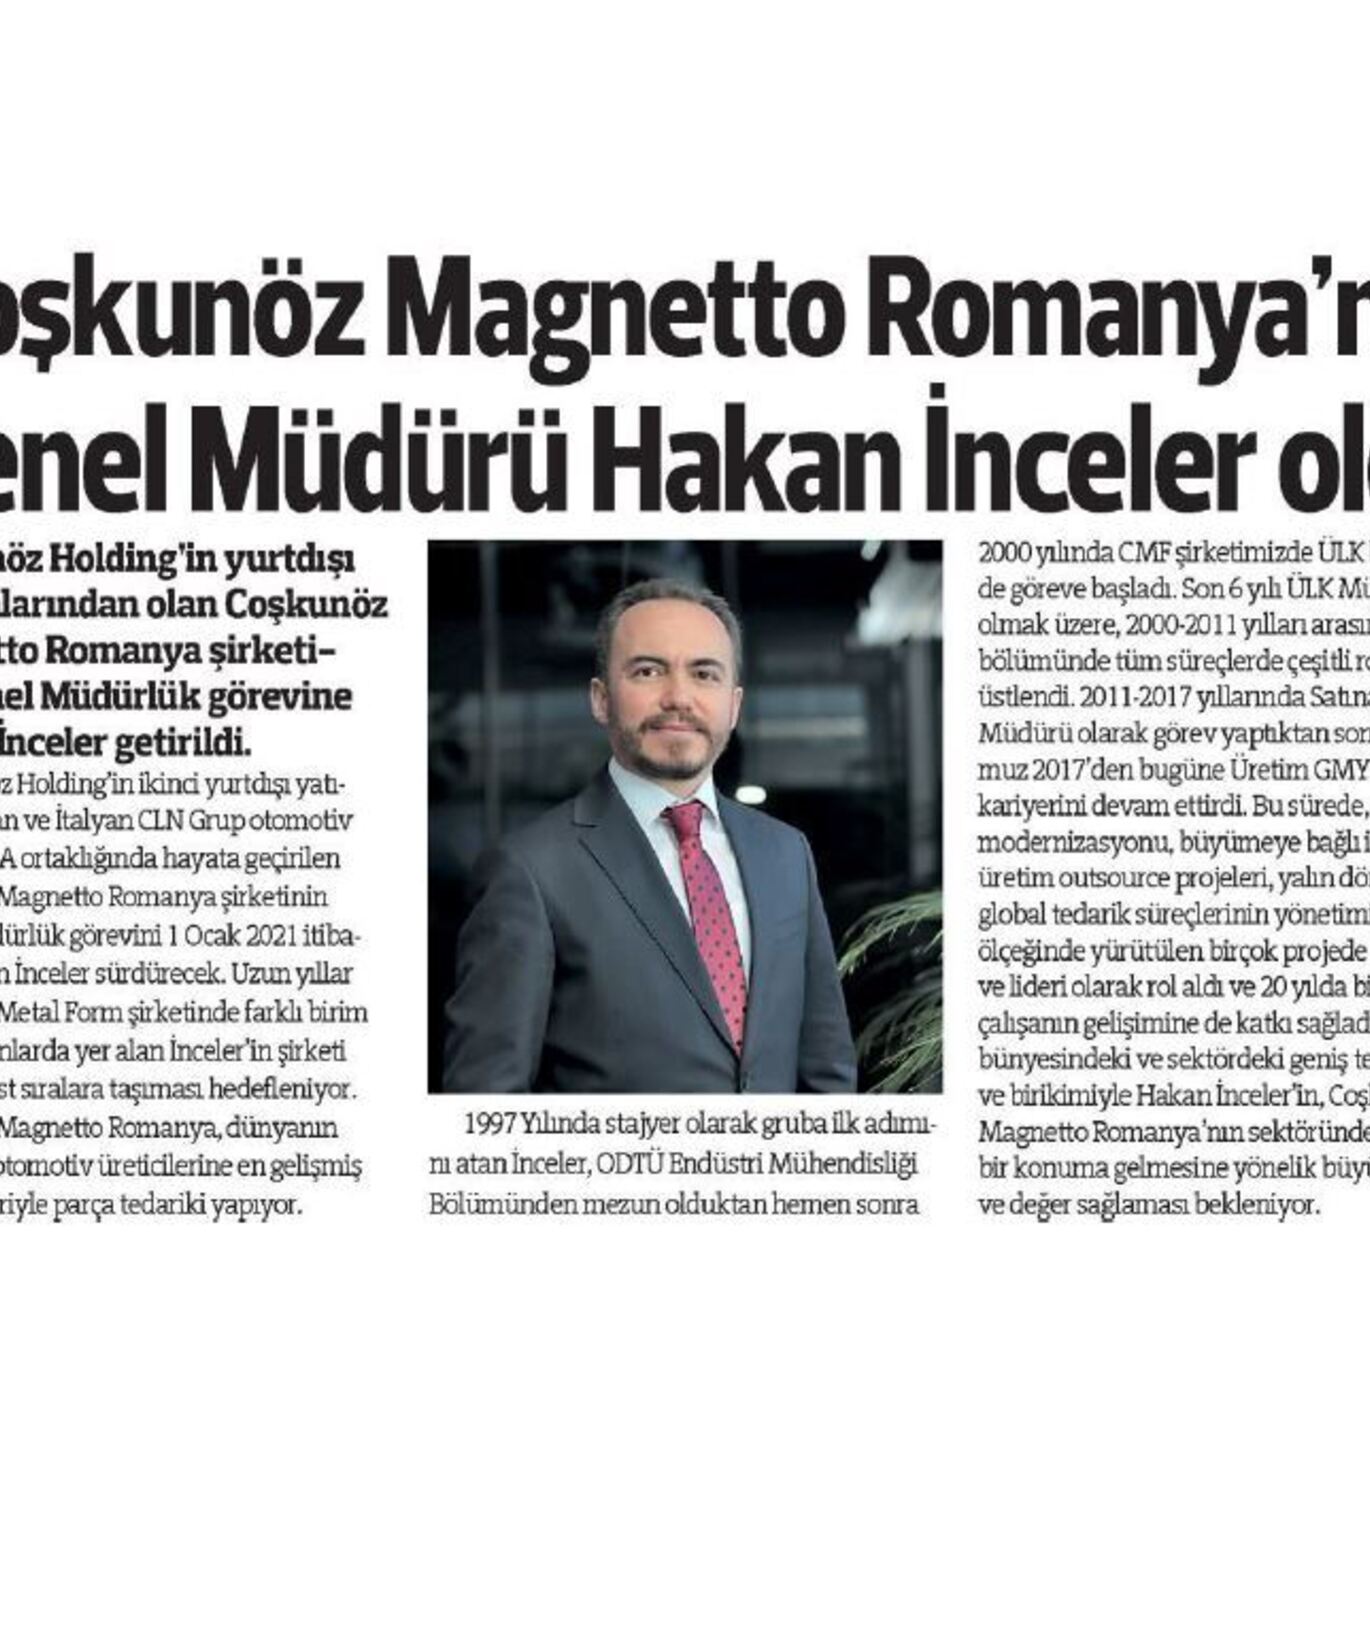 Coşkunöz Magnetto Romanya'nın Genel Müdürü Hakan İnceler oldu 